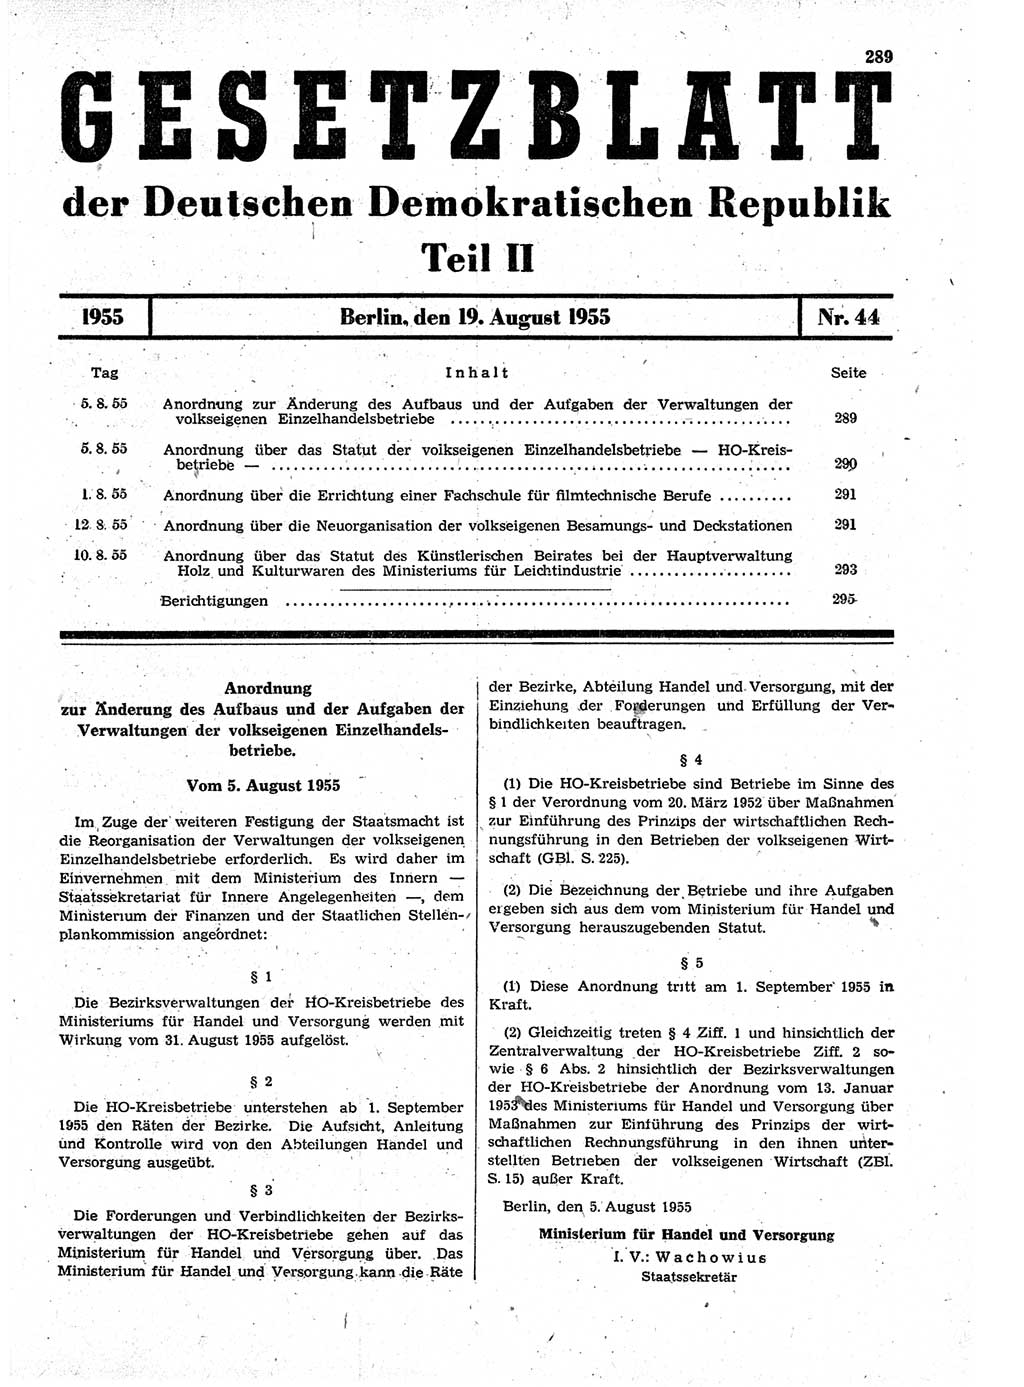 Gesetzblatt (GBl.) der Deutschen Demokratischen Republik (DDR) Teil ⅠⅠ 1955, Seite 289 (GBl. DDR ⅠⅠ 1955, S. 289)